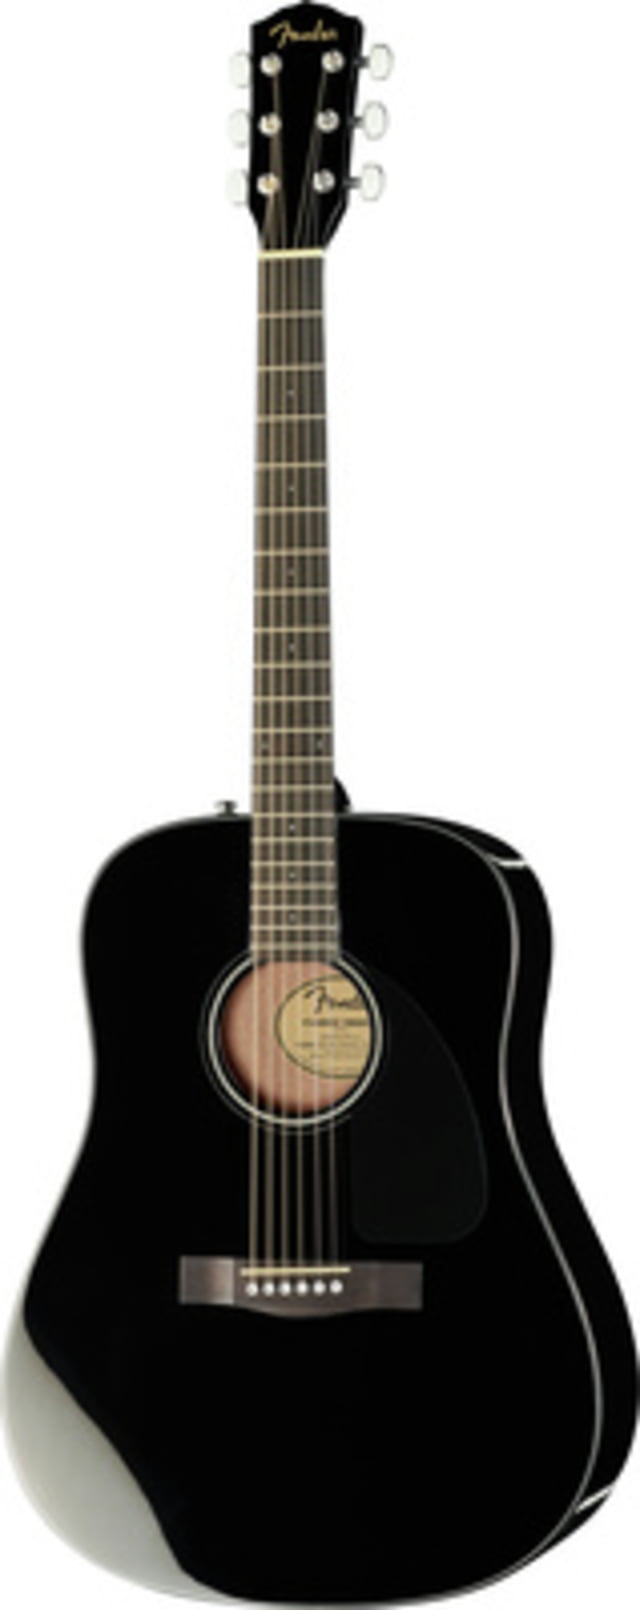 Fender CD-60 BK V3